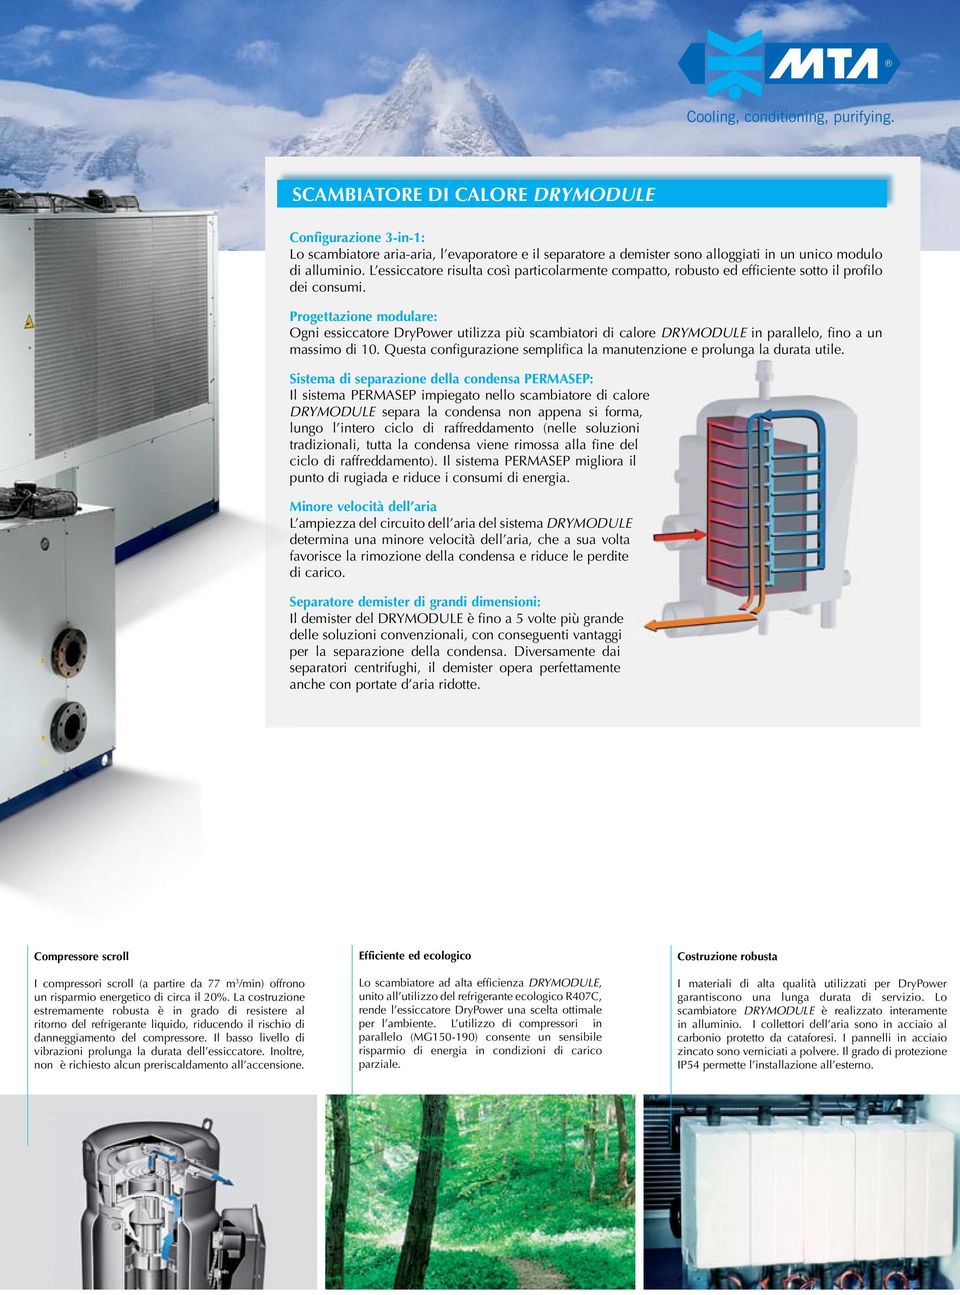 Progettazione modulare: Ogni essiccatore DryPower utilizza più scambiatori di calore DRYMODULE in parallelo, fino a un massimo di 10.